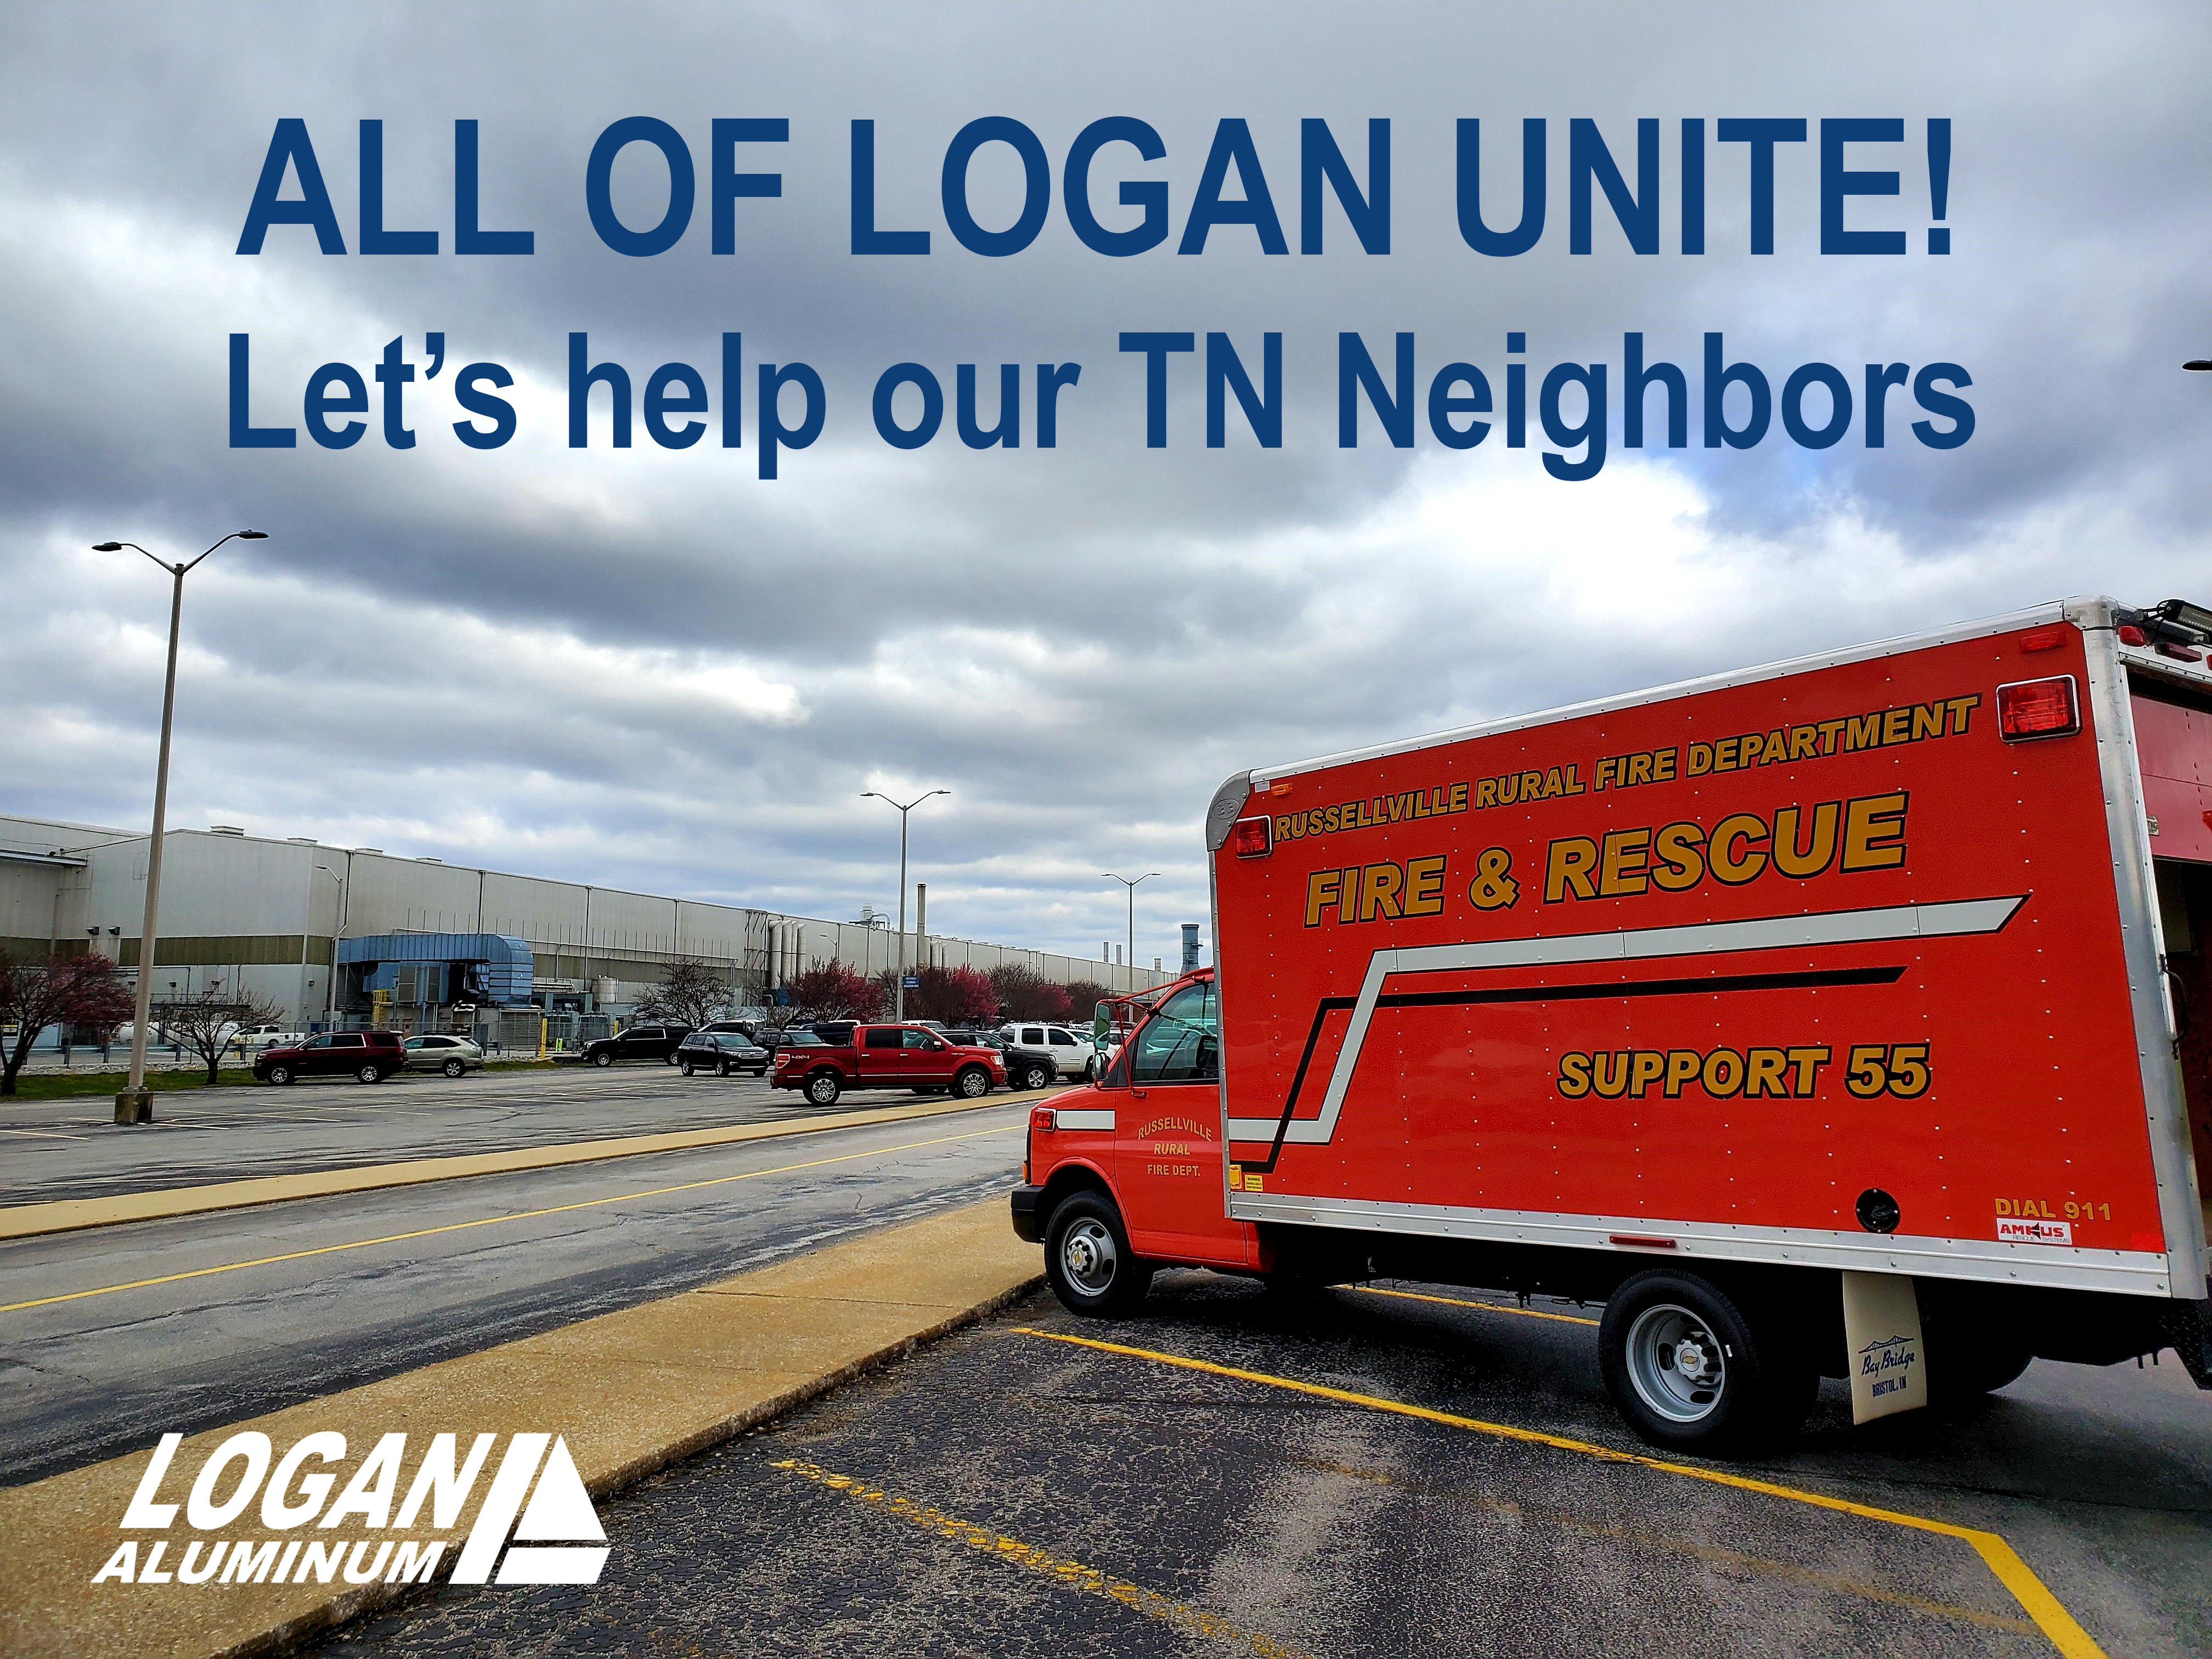 Logan Aluminum collecting donations for Tornado victims